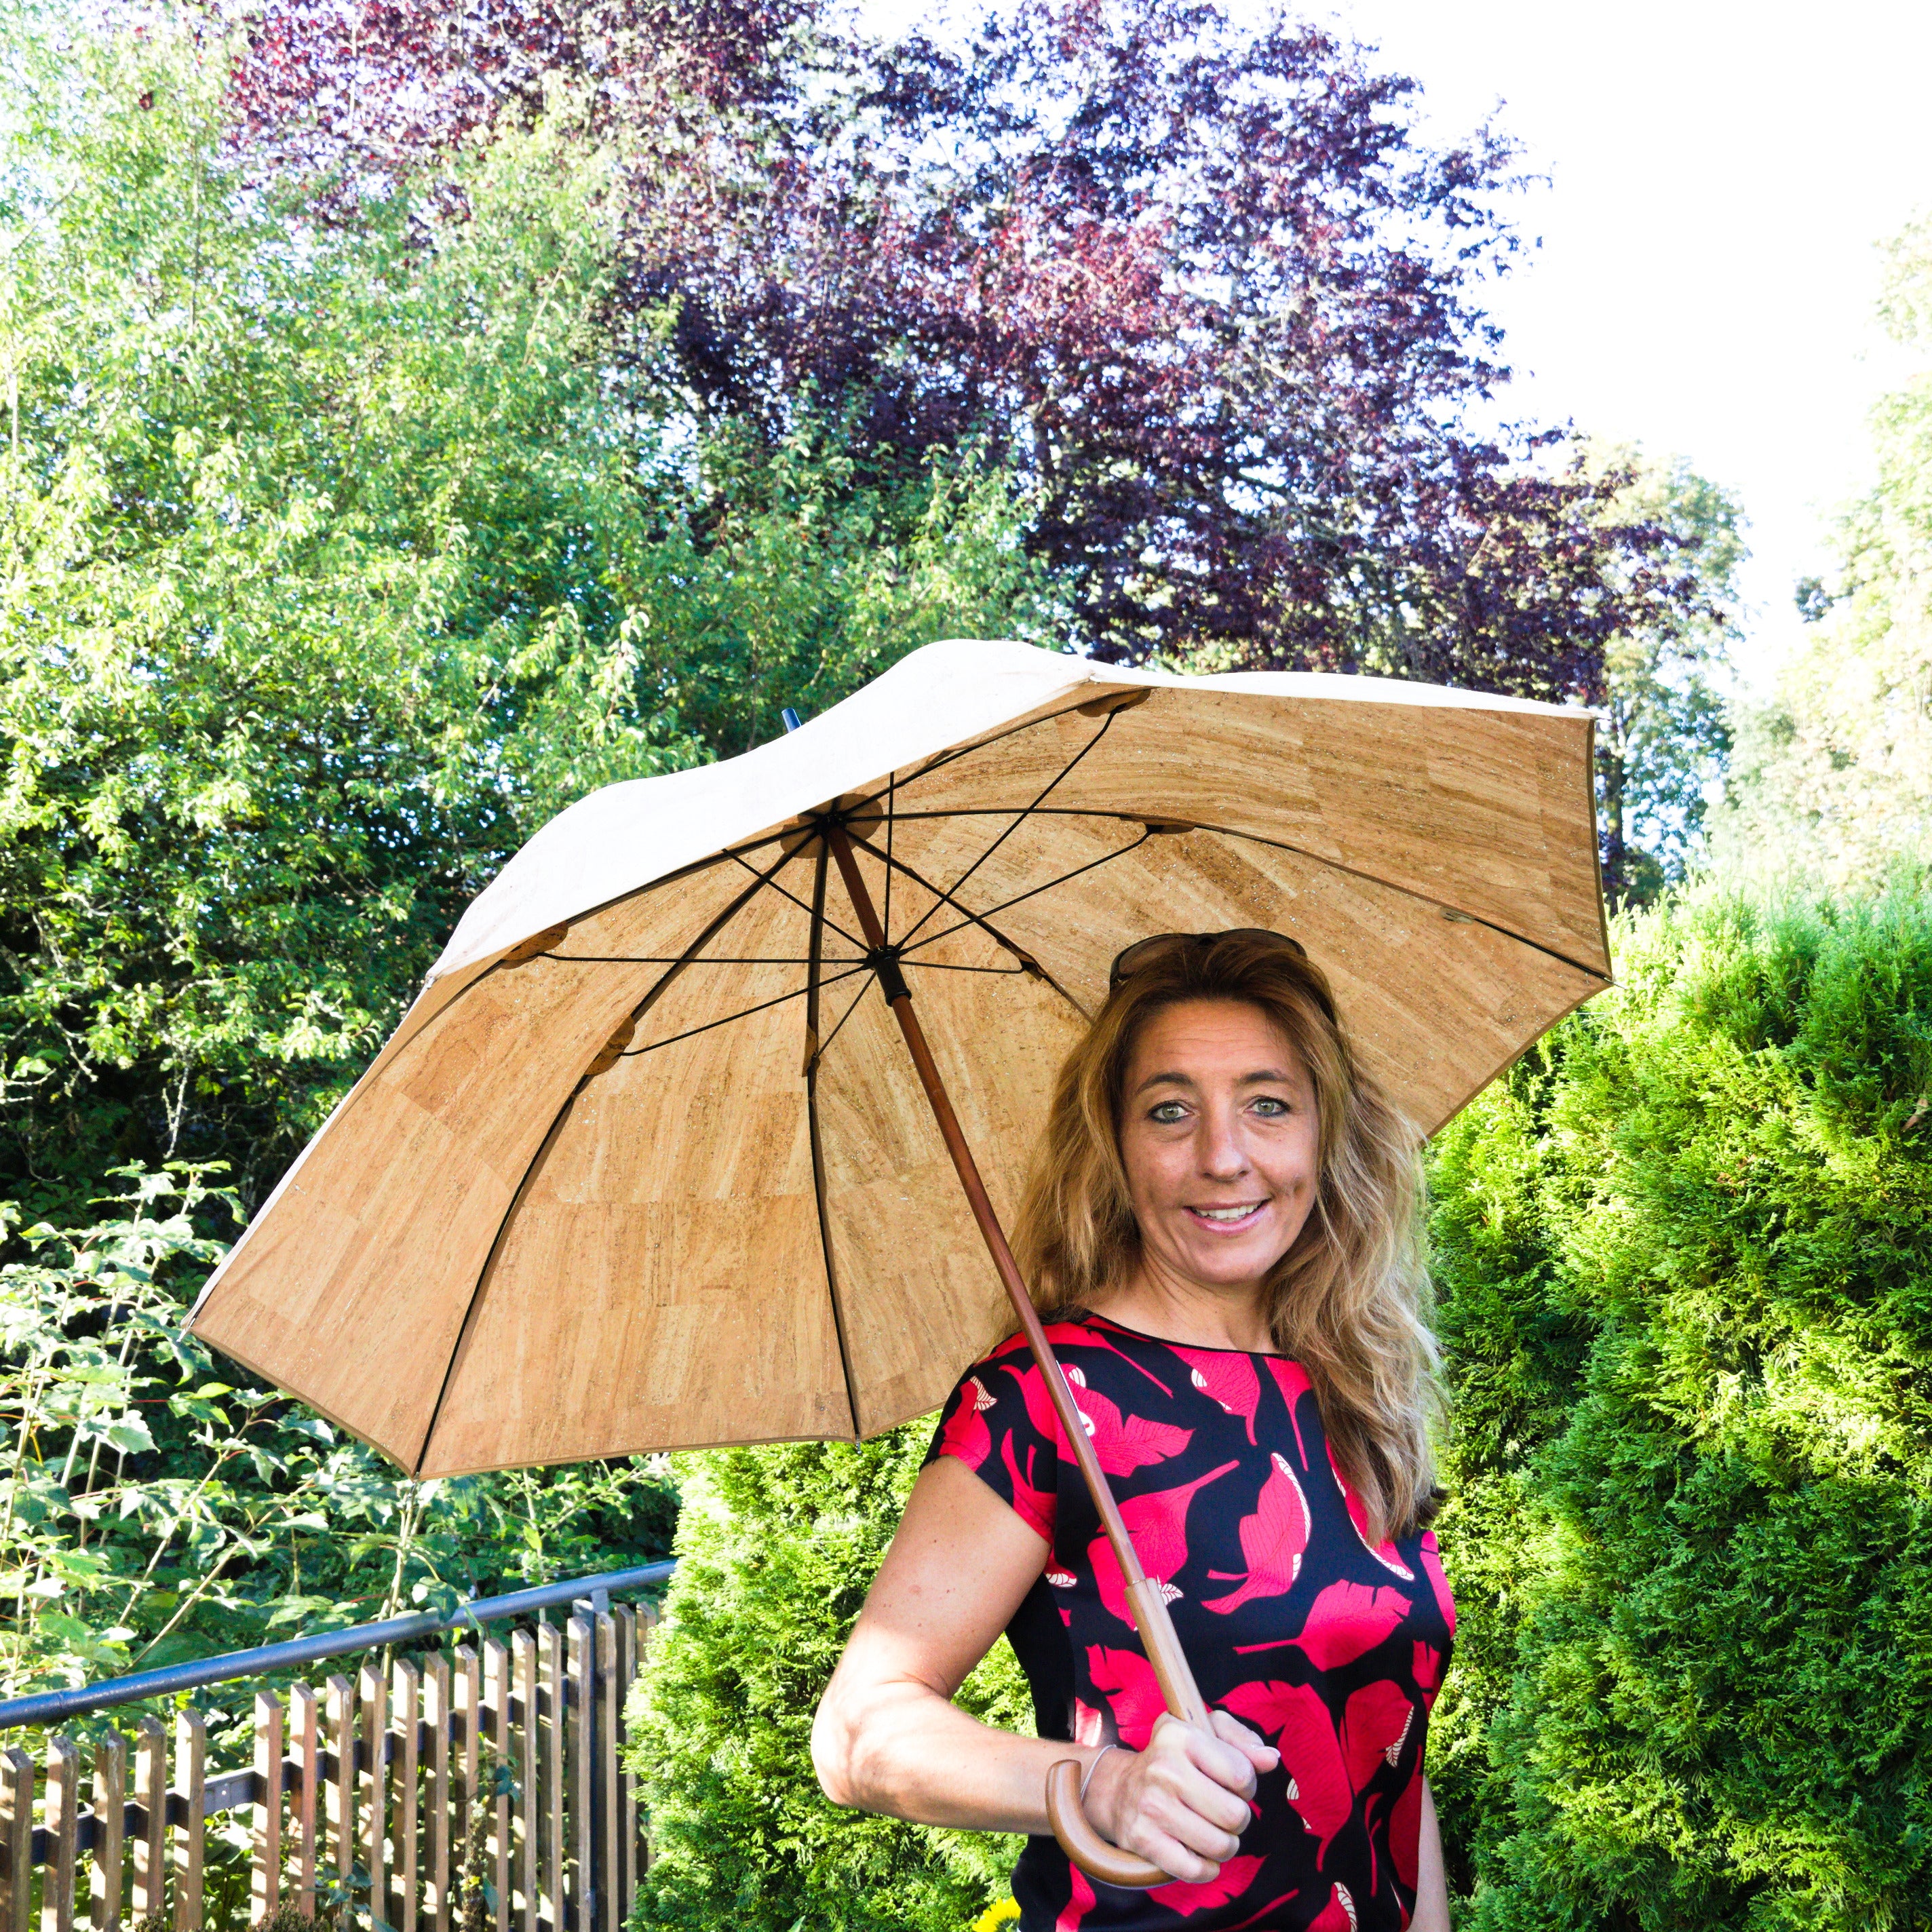 Ombrello in sughero * vegano * ombrello per uomo e donna * manico in legno * prodotto in Portogallo